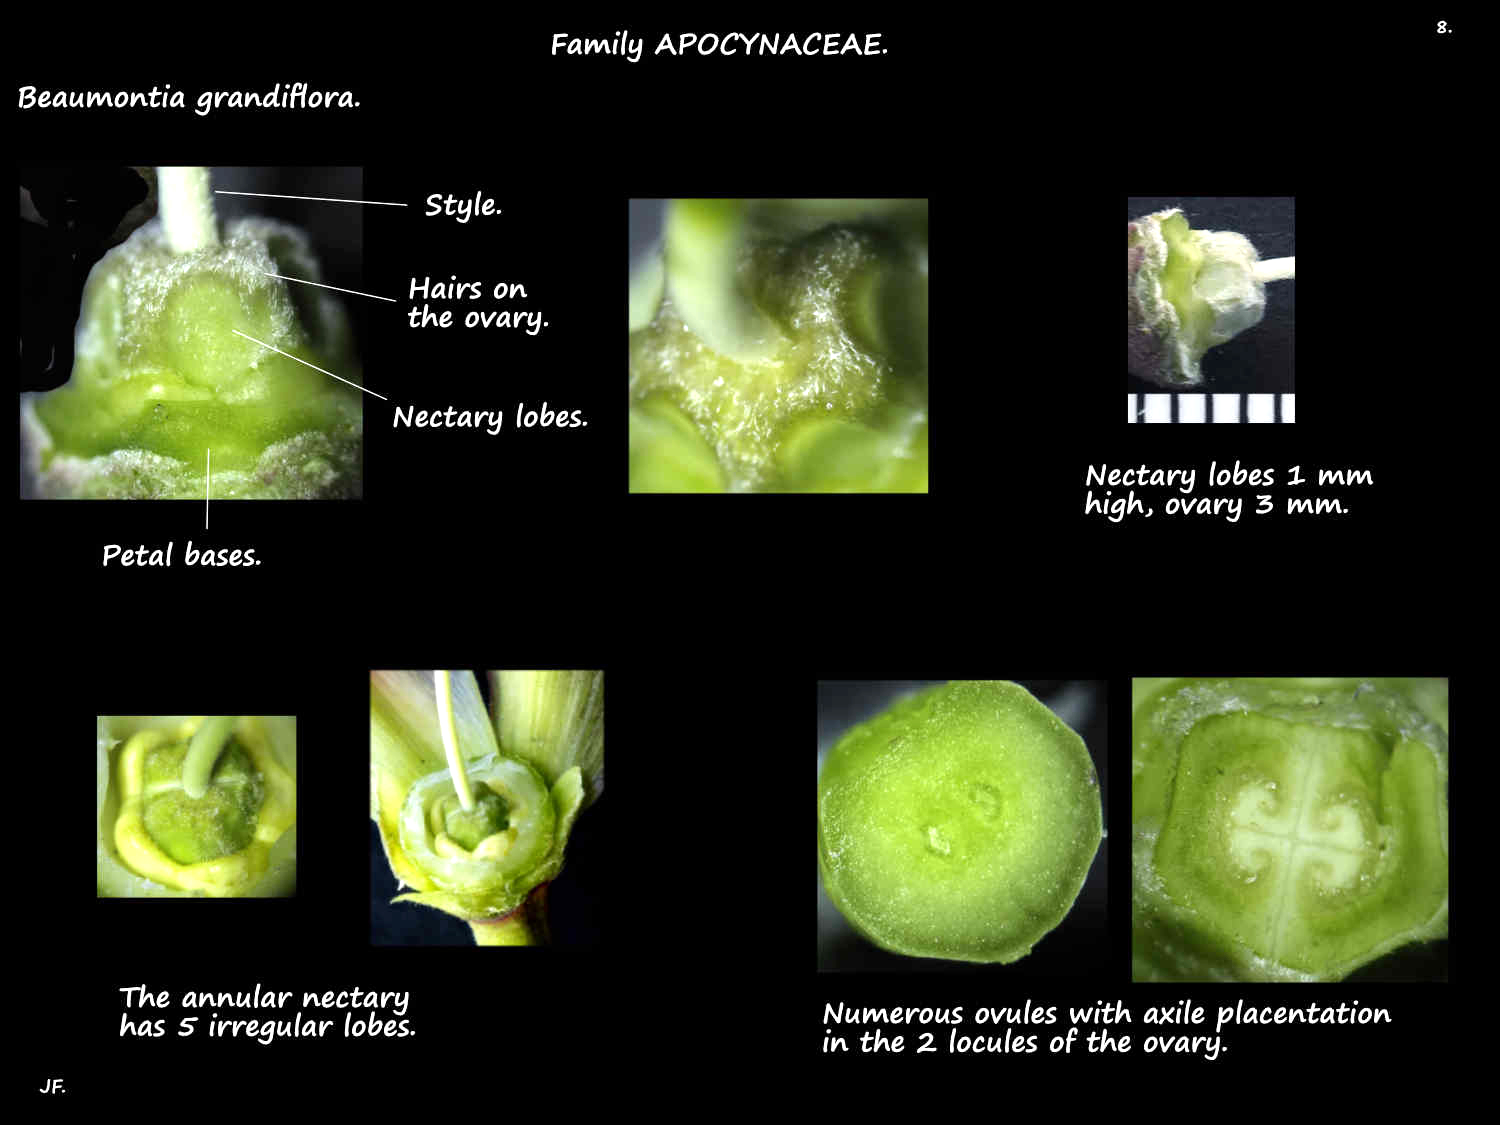 8 Beaumontia grandiflora ovary & nectaries